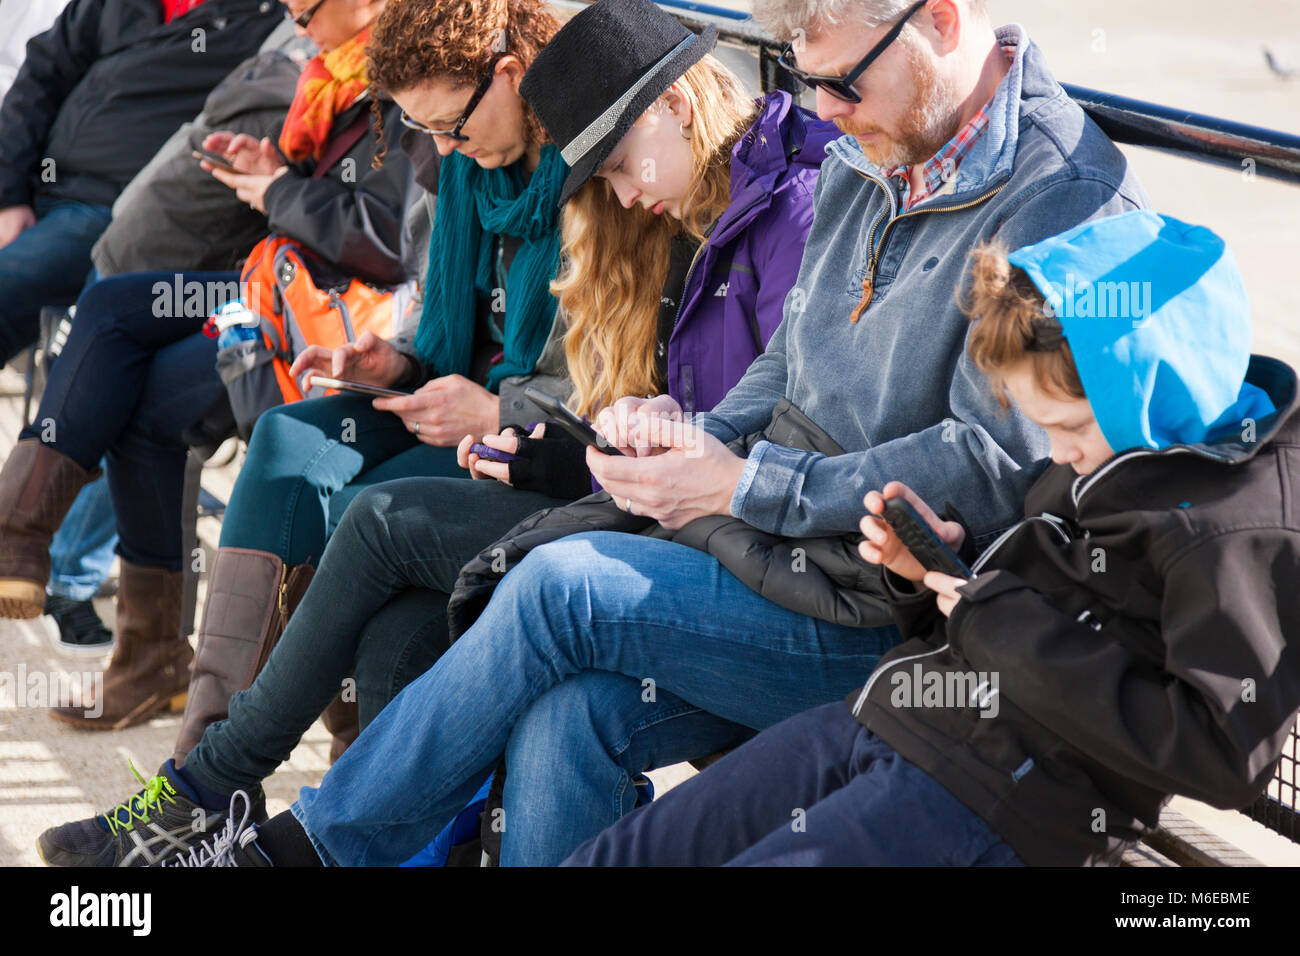 Assis sur un banc de la famille, qui sont tous en même temps à regarder leur téléphone mobile / Terminal / Terminaux, les sms ou le surf / à l'aide de web / internet. Banque D'Images